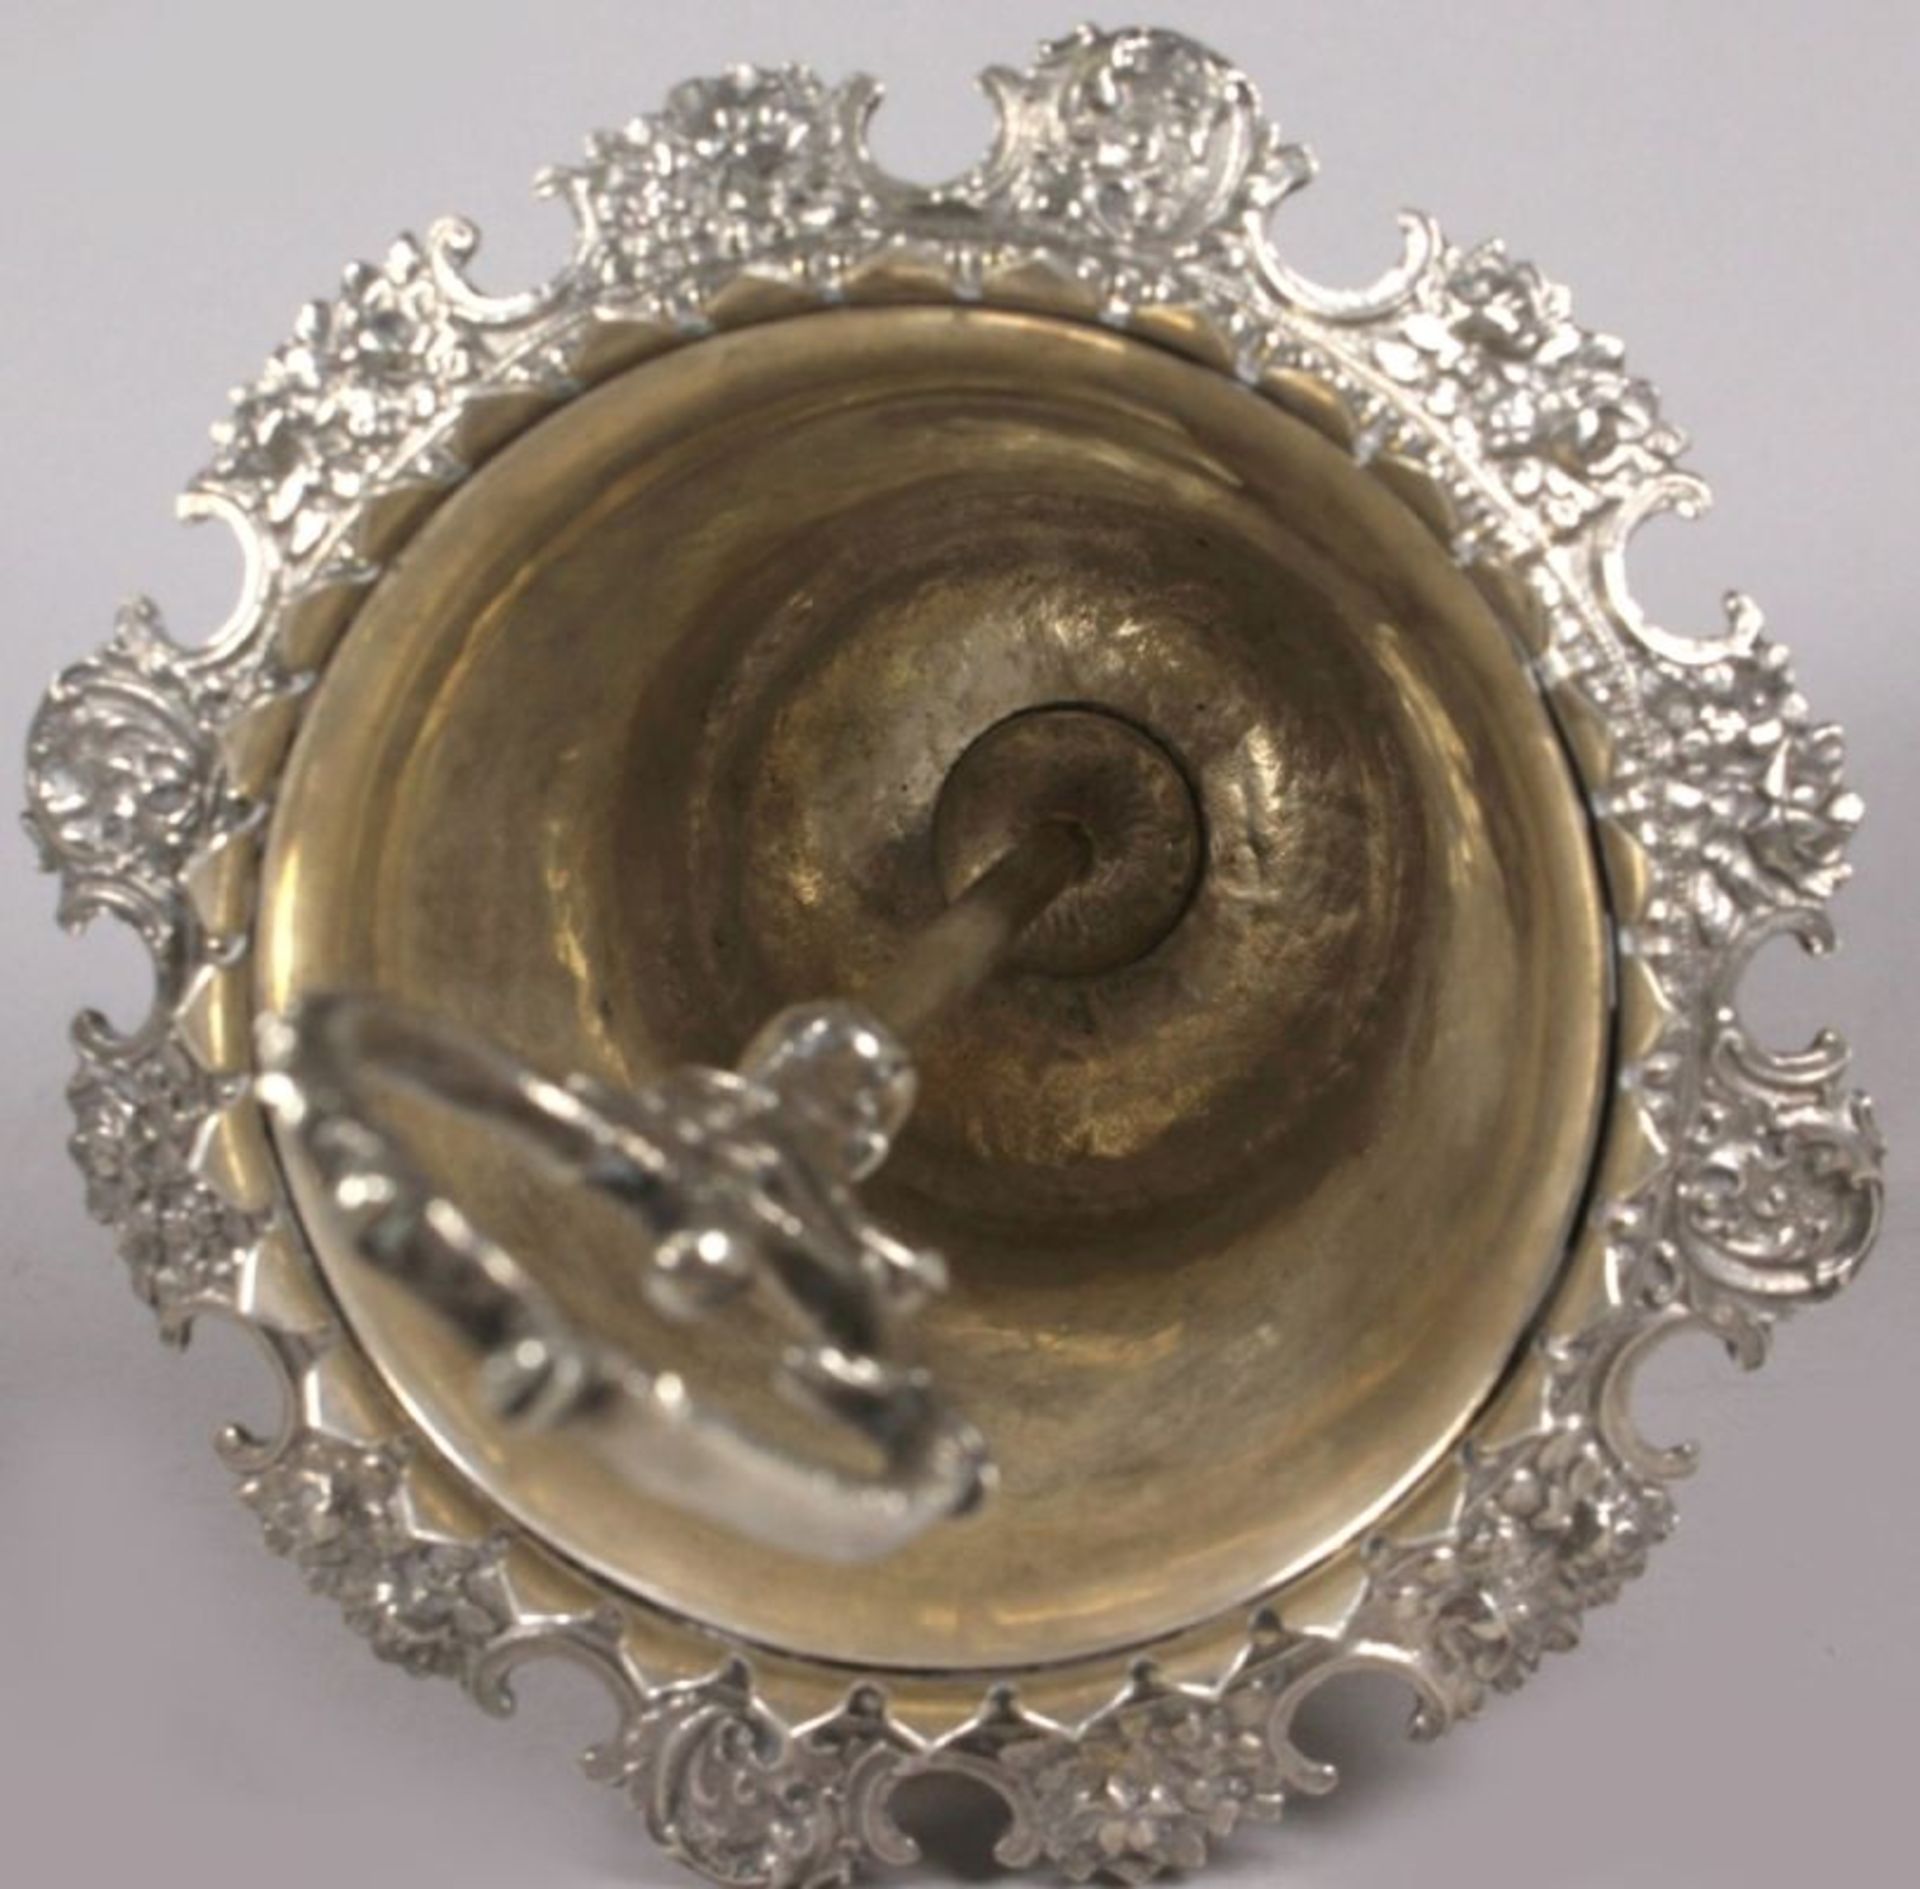 Zuckerschale, unleserlich gepunzt, Mitte 19. Jh., Silber, runder Stand mit geschweiftenFüßen, g - Bild 2 aus 4